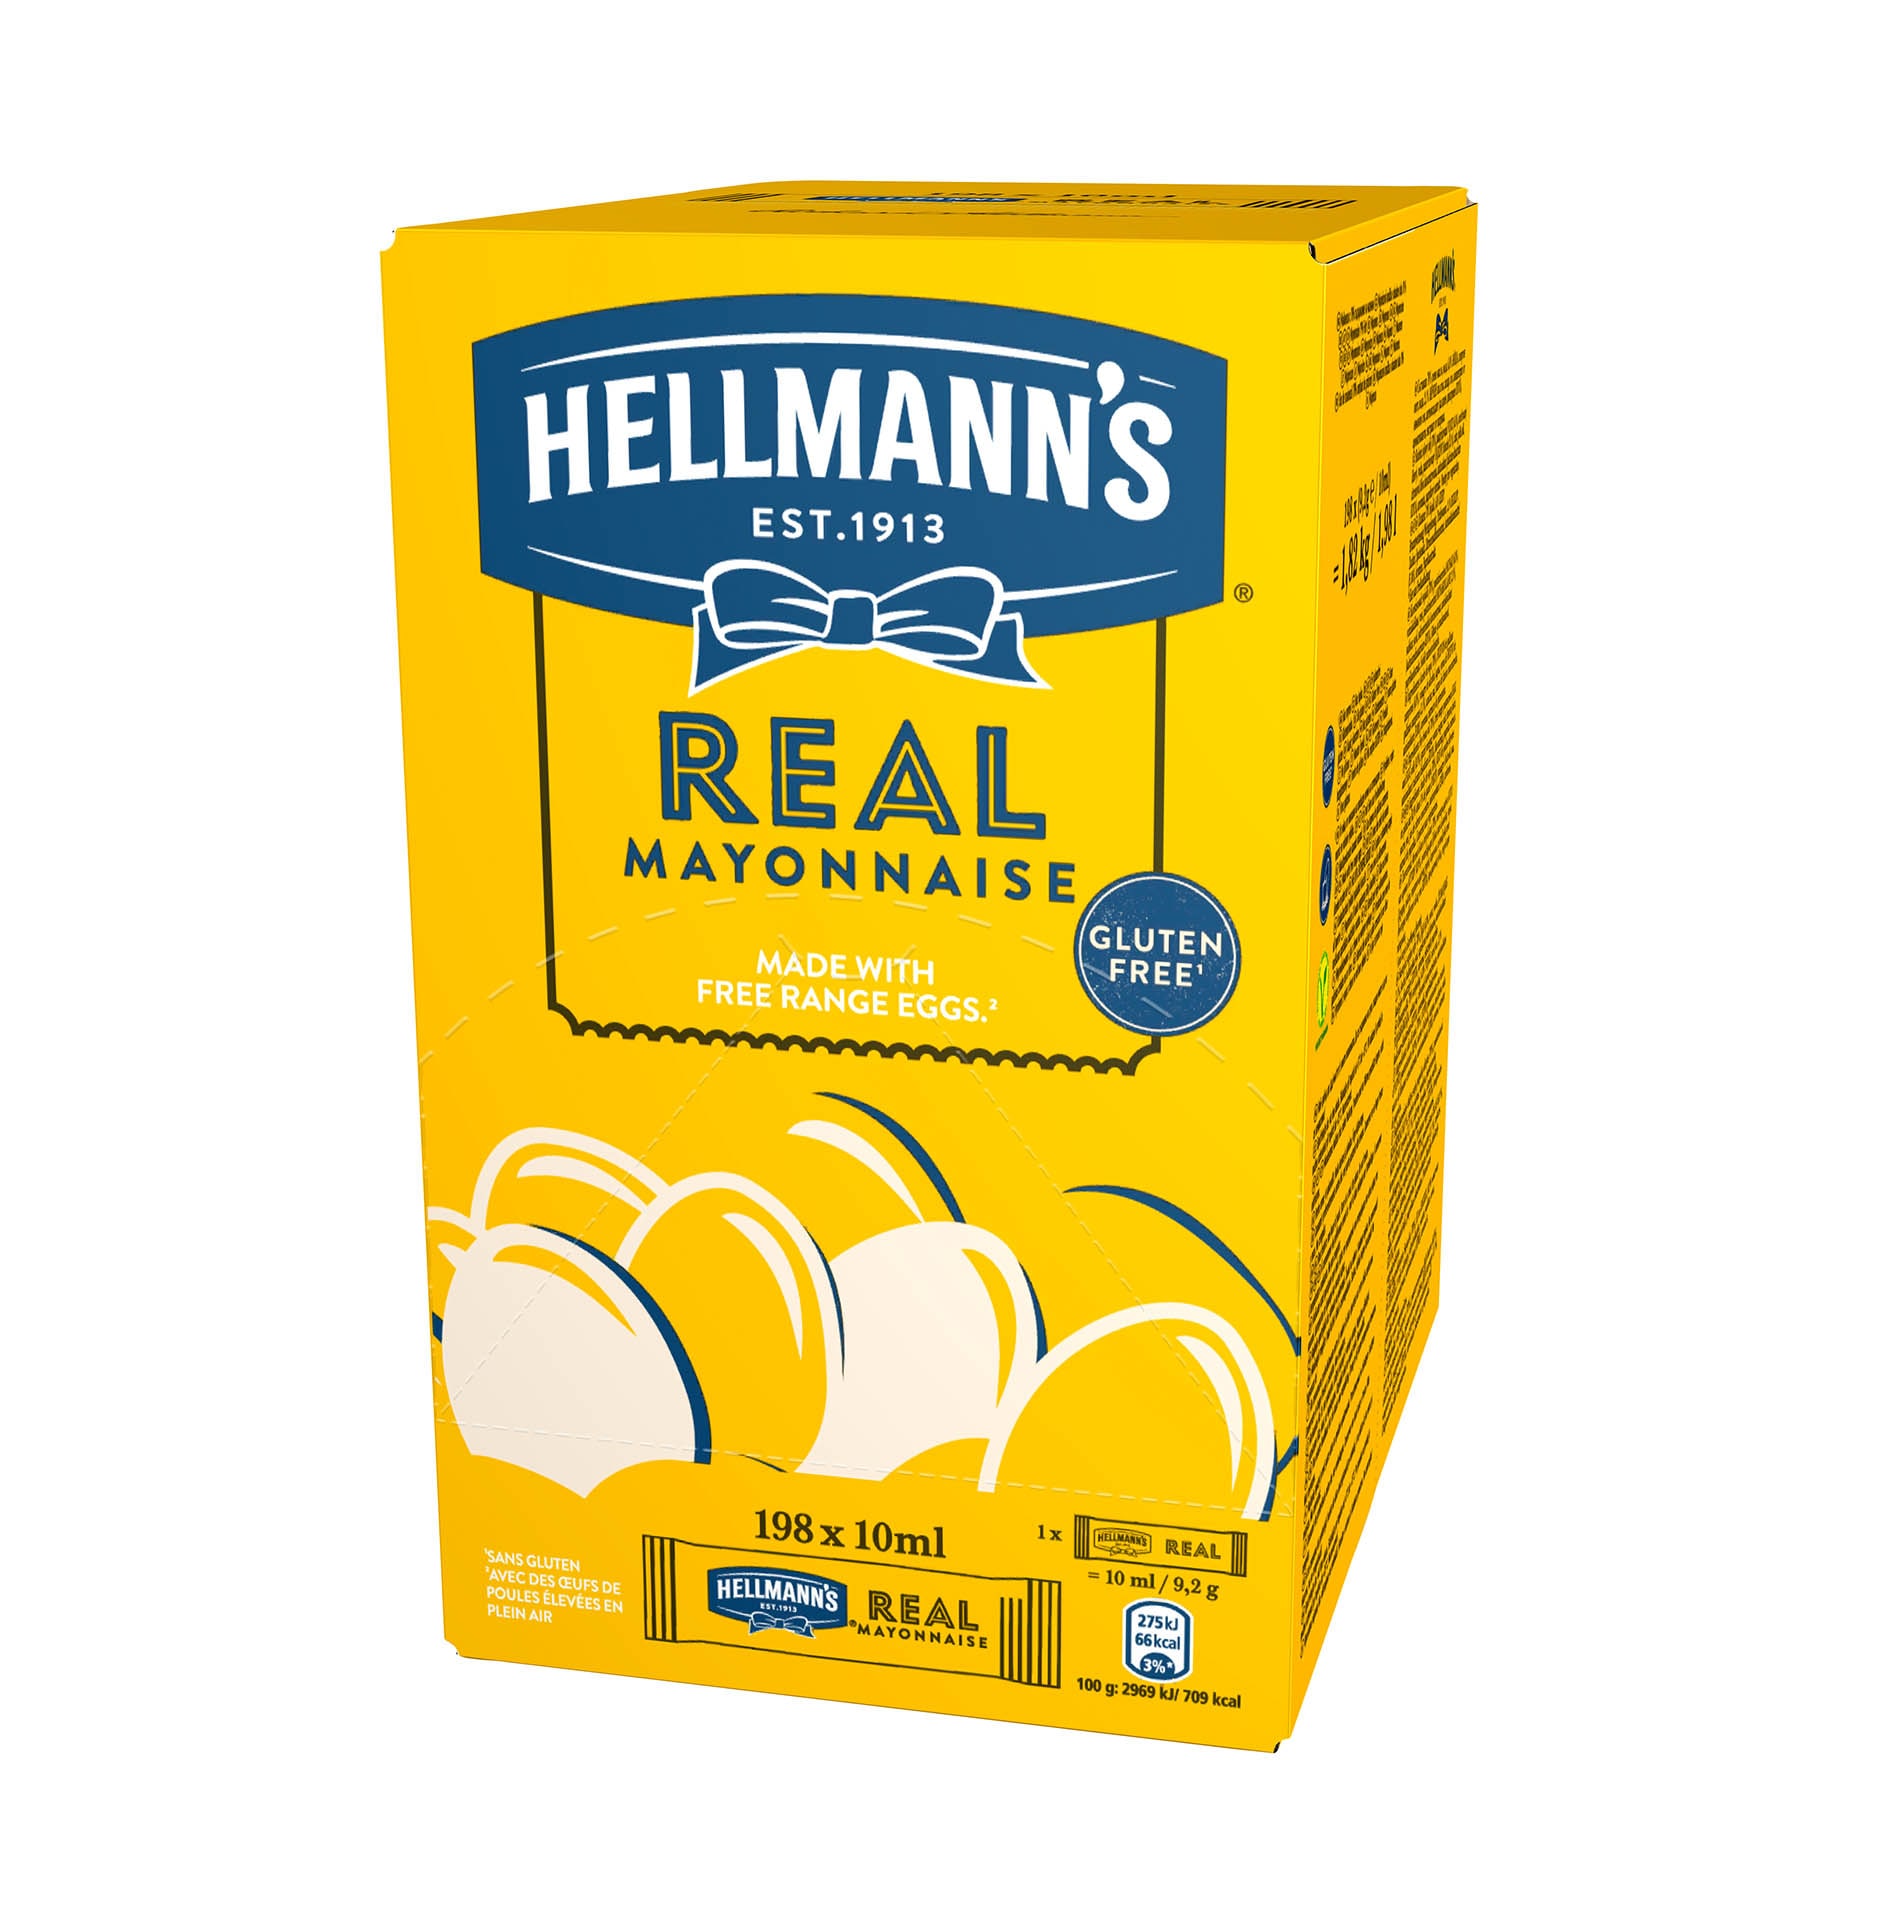 Hellmann’s Real Mayonnaise - La maionese N°1 al mondo*, in un formato che ti permette di tenere i costi sotto controllo.